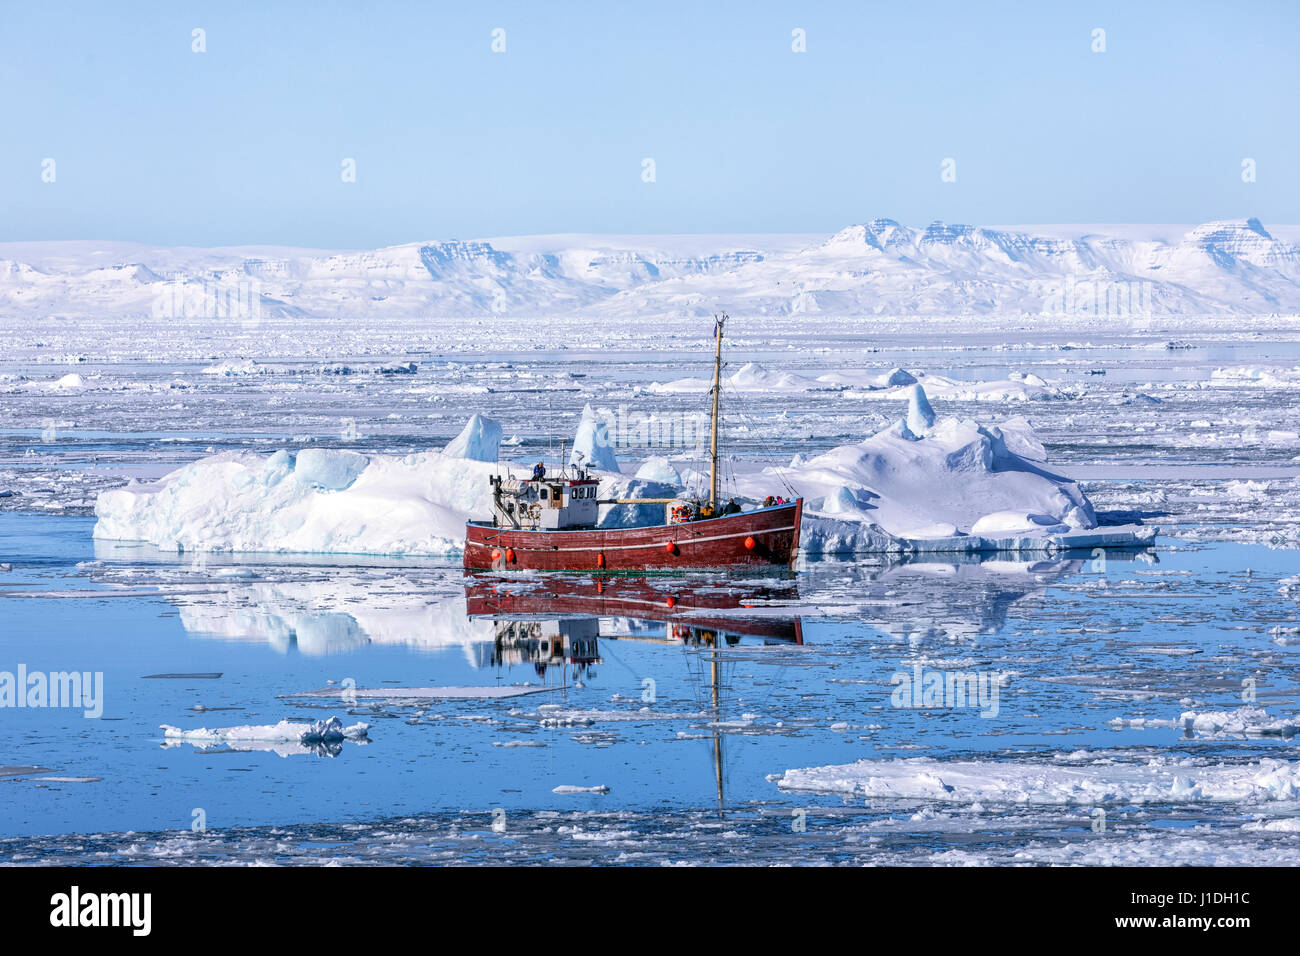 Icefjord, Ilulissat, Greenland Stock Photo